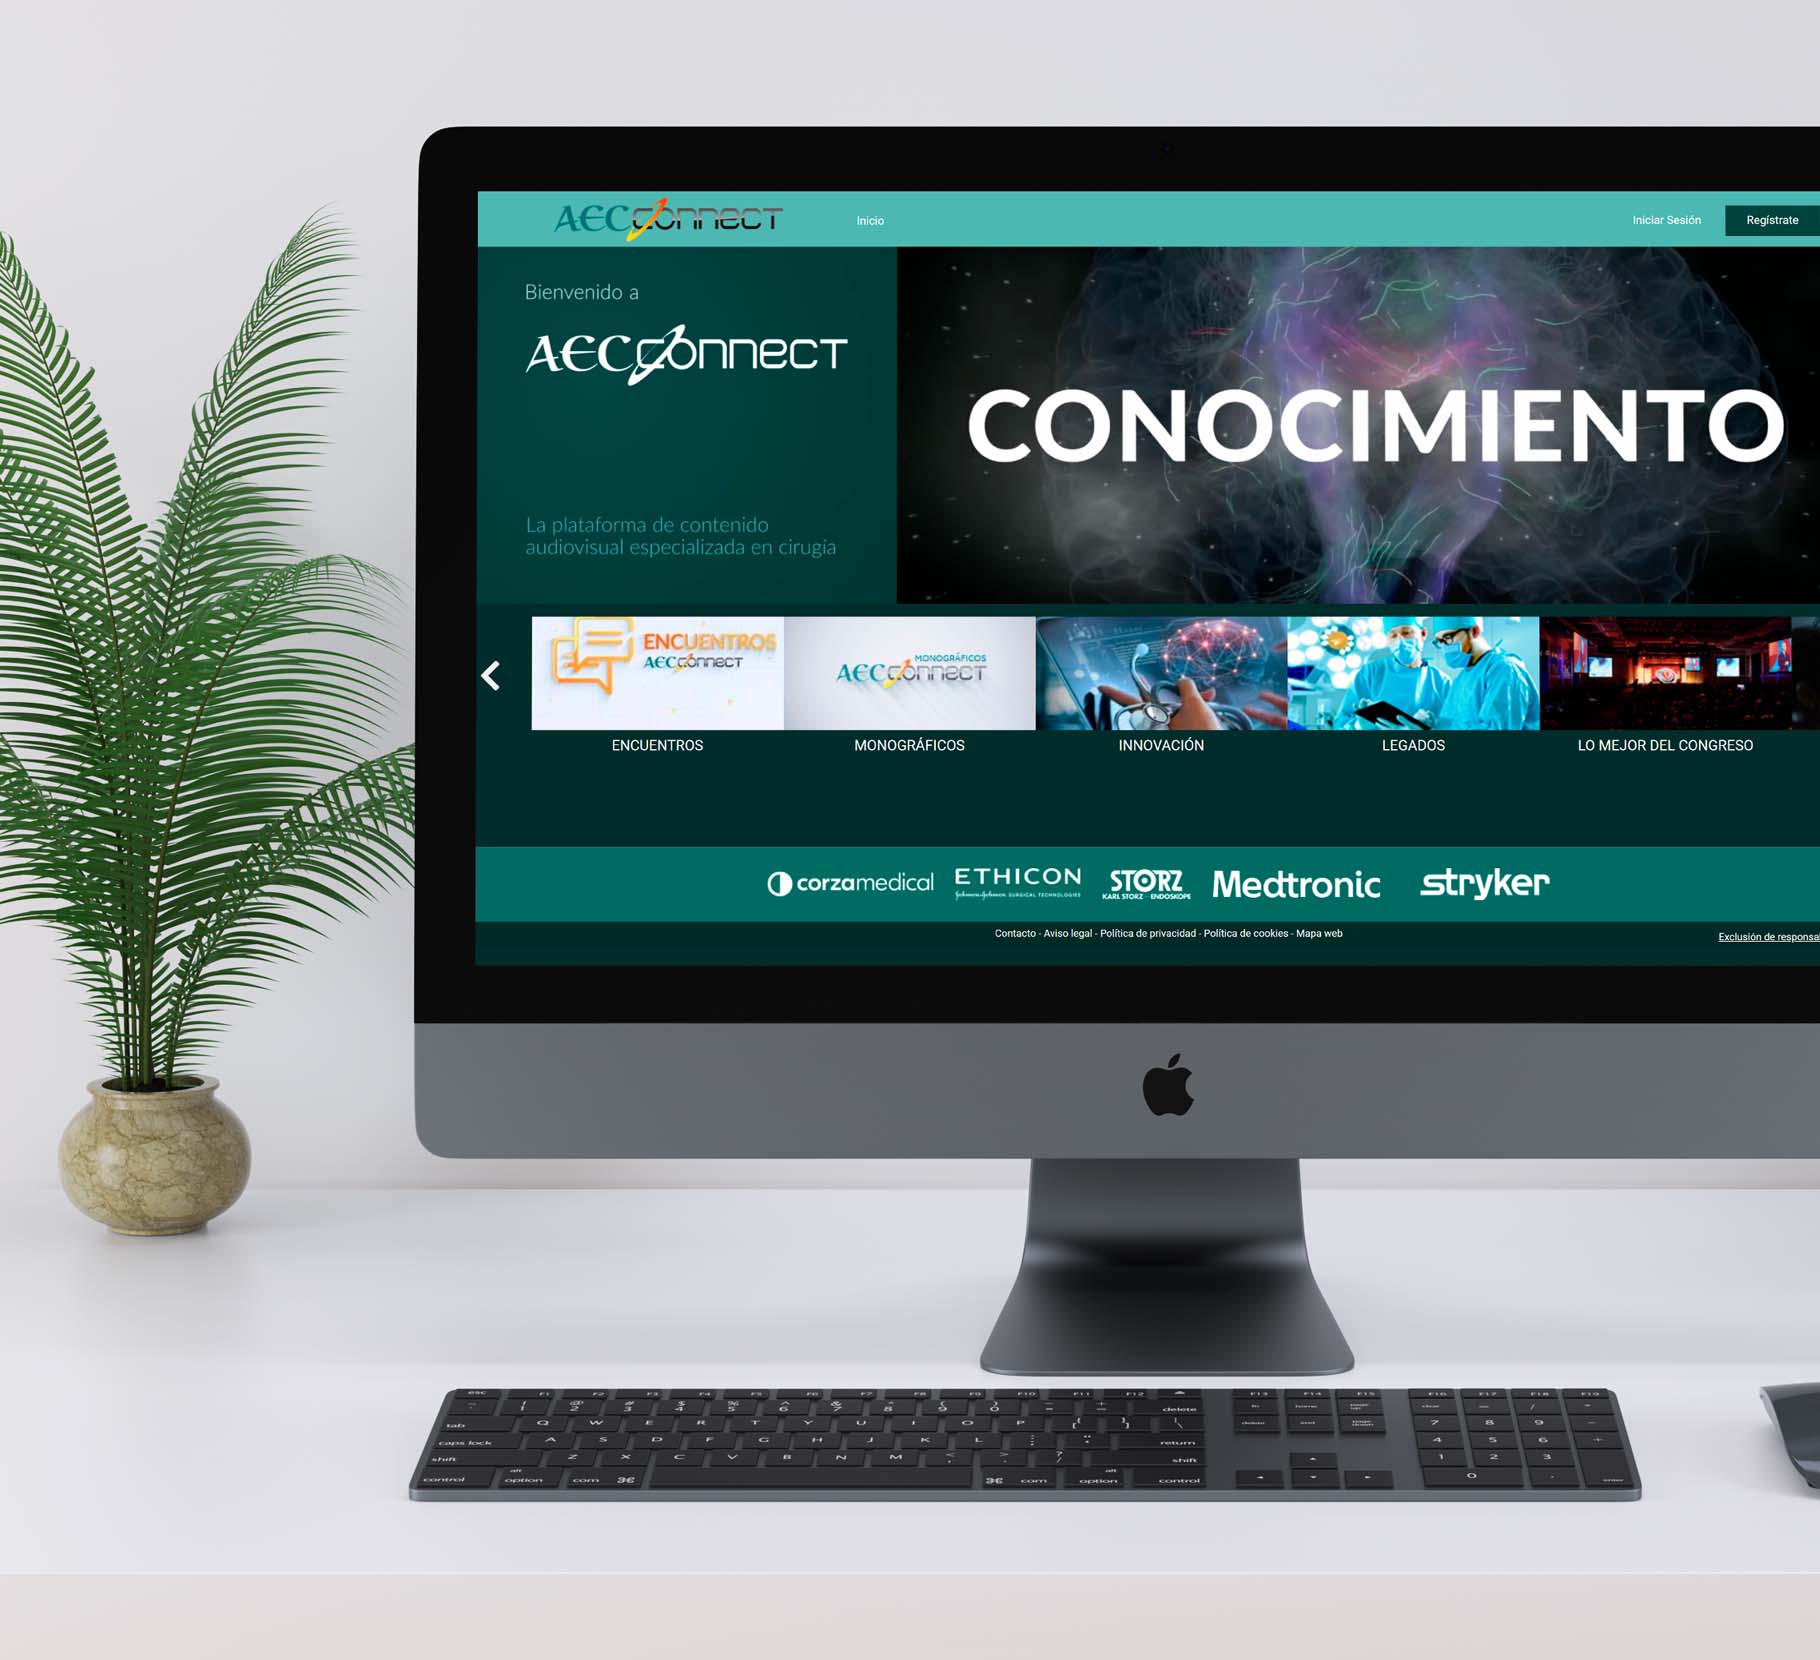 Asociación Española de Cirujanos (AEC) – AEC CONNECT